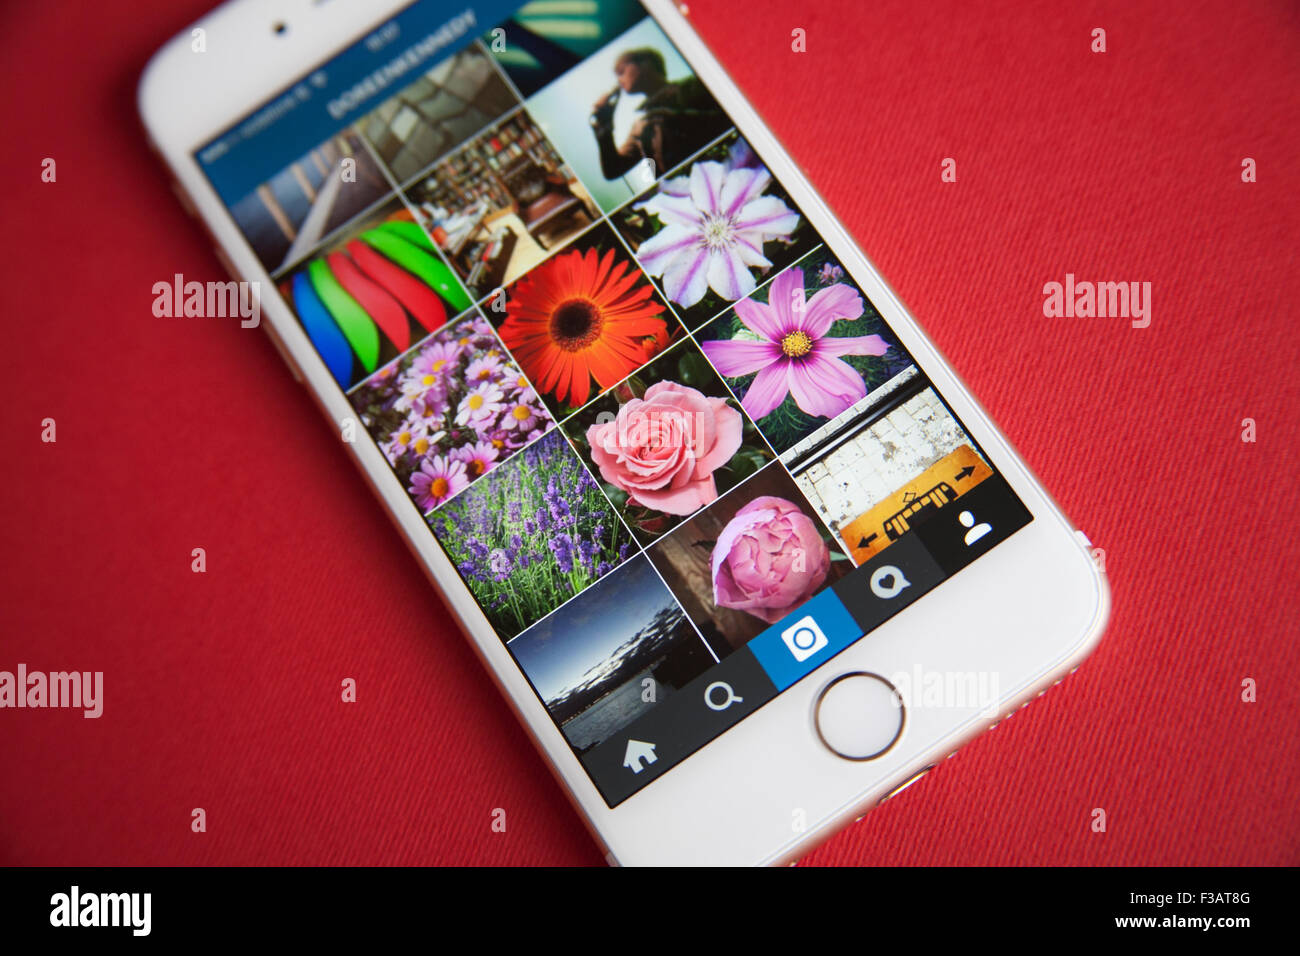 Instagram agregador de fotos en una pantalla en blanco y oro Apple iPhone 6 contra un fondo rojo. Foto de stock